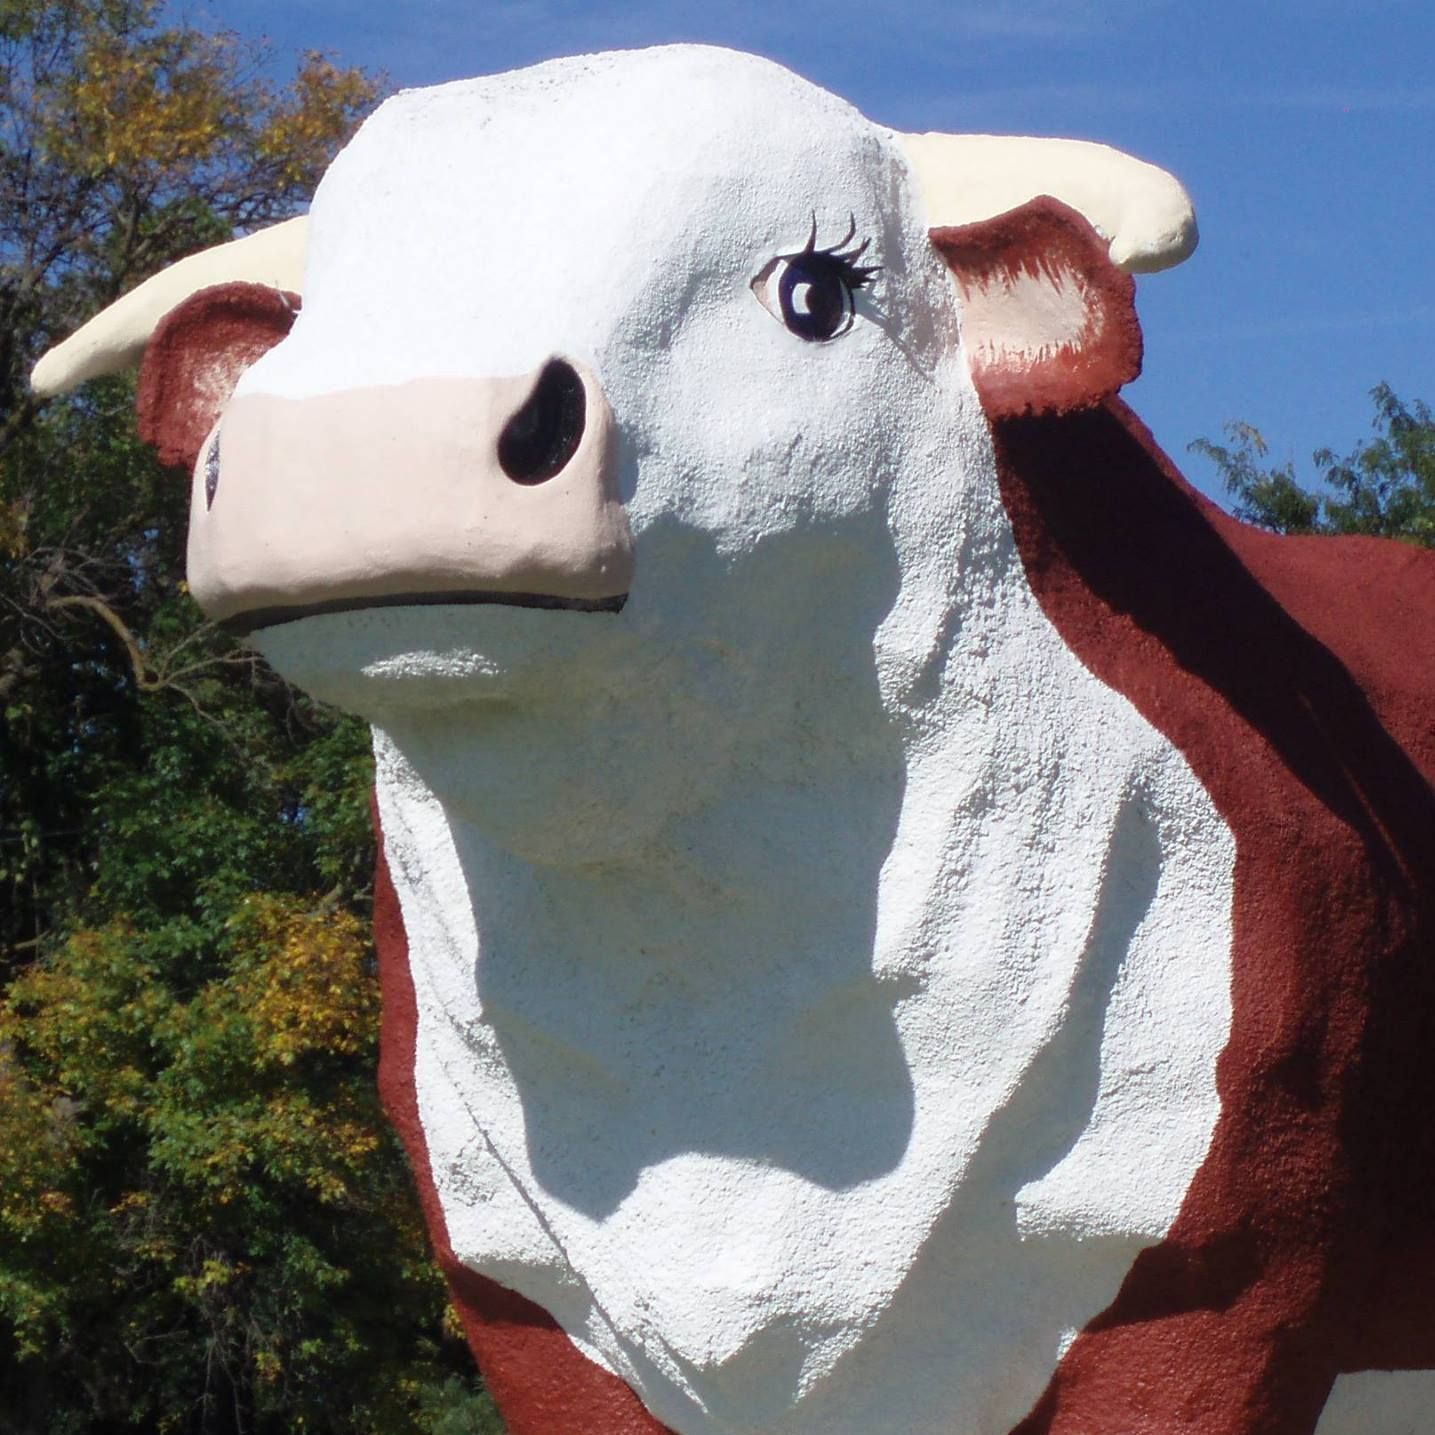 World’s Largest Bull Sculpture: world record in Audubon, Iowa